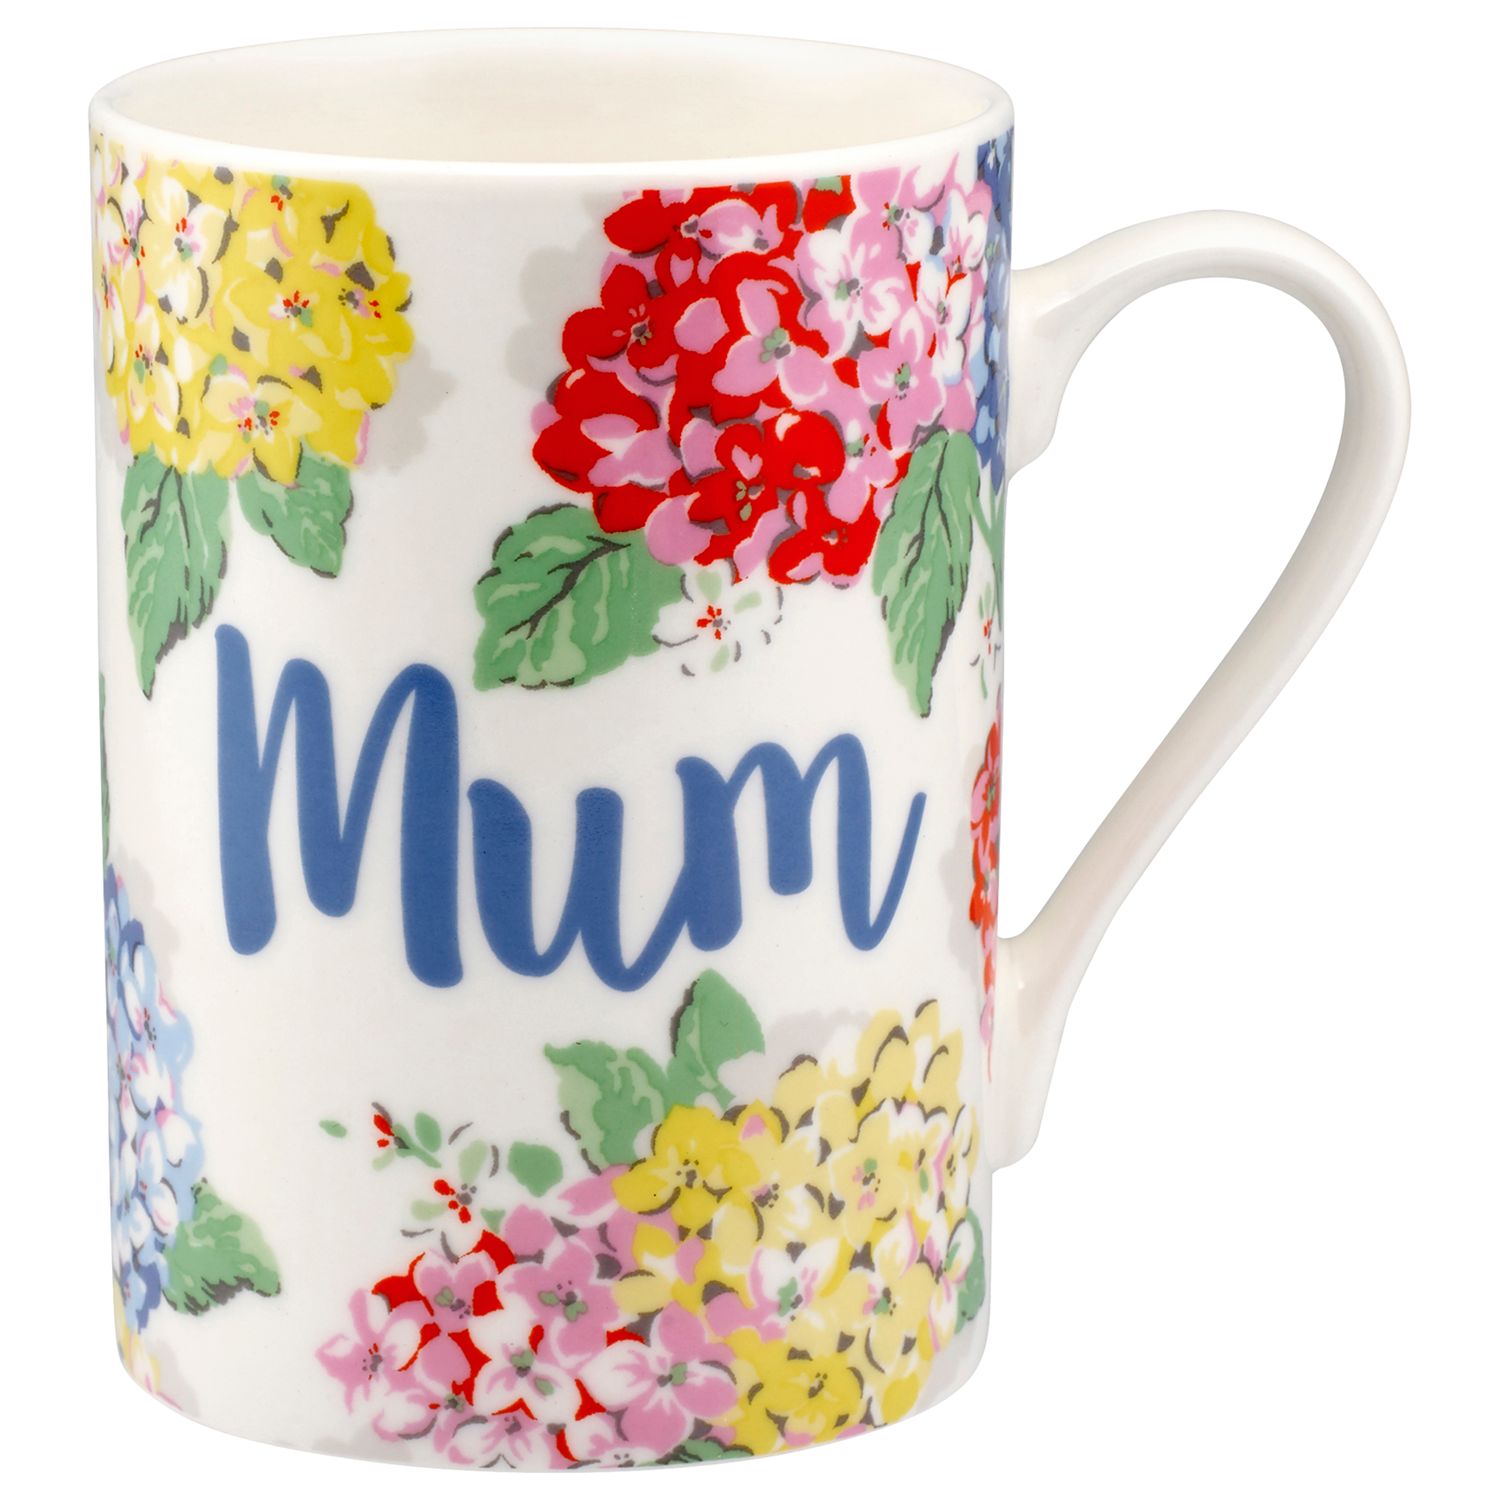 cath kidston mum mug